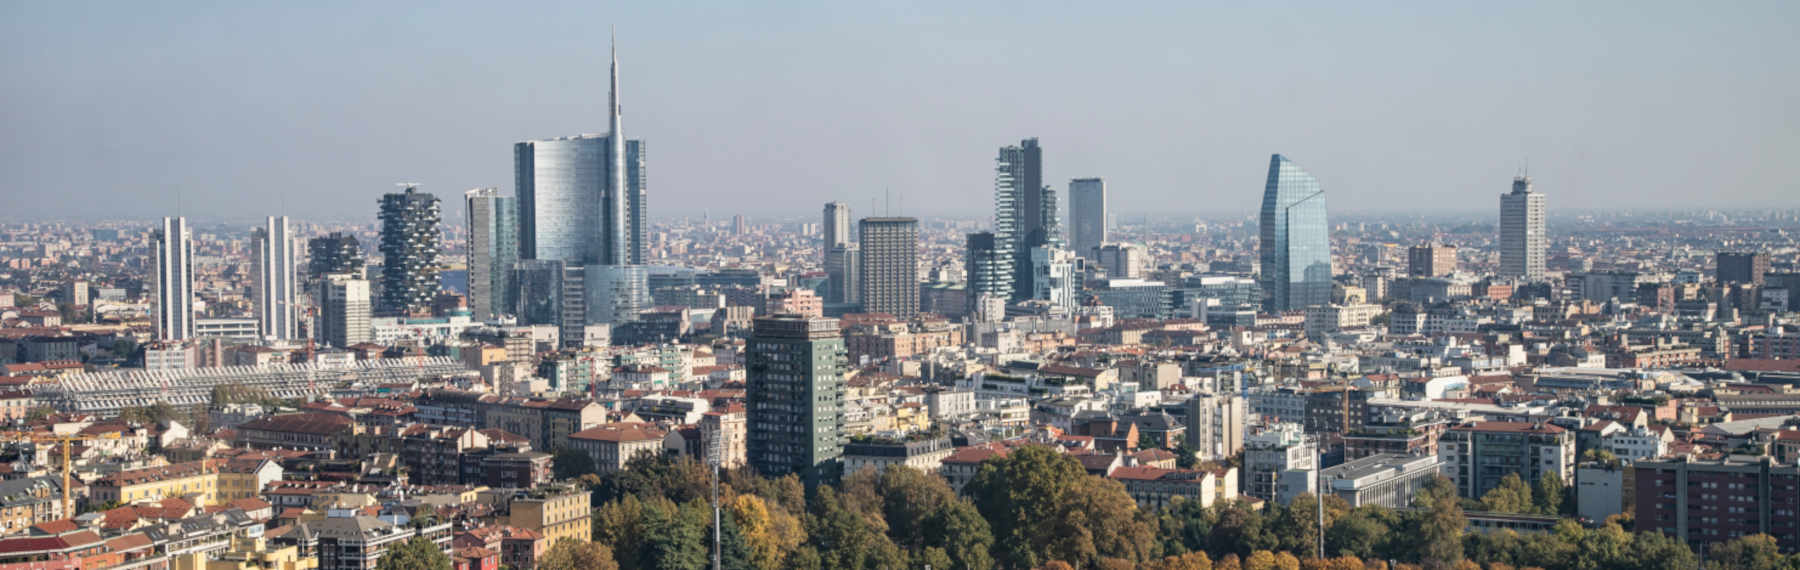 Veduta di Milano, una delle città italiane con più inquinamento atmosferico